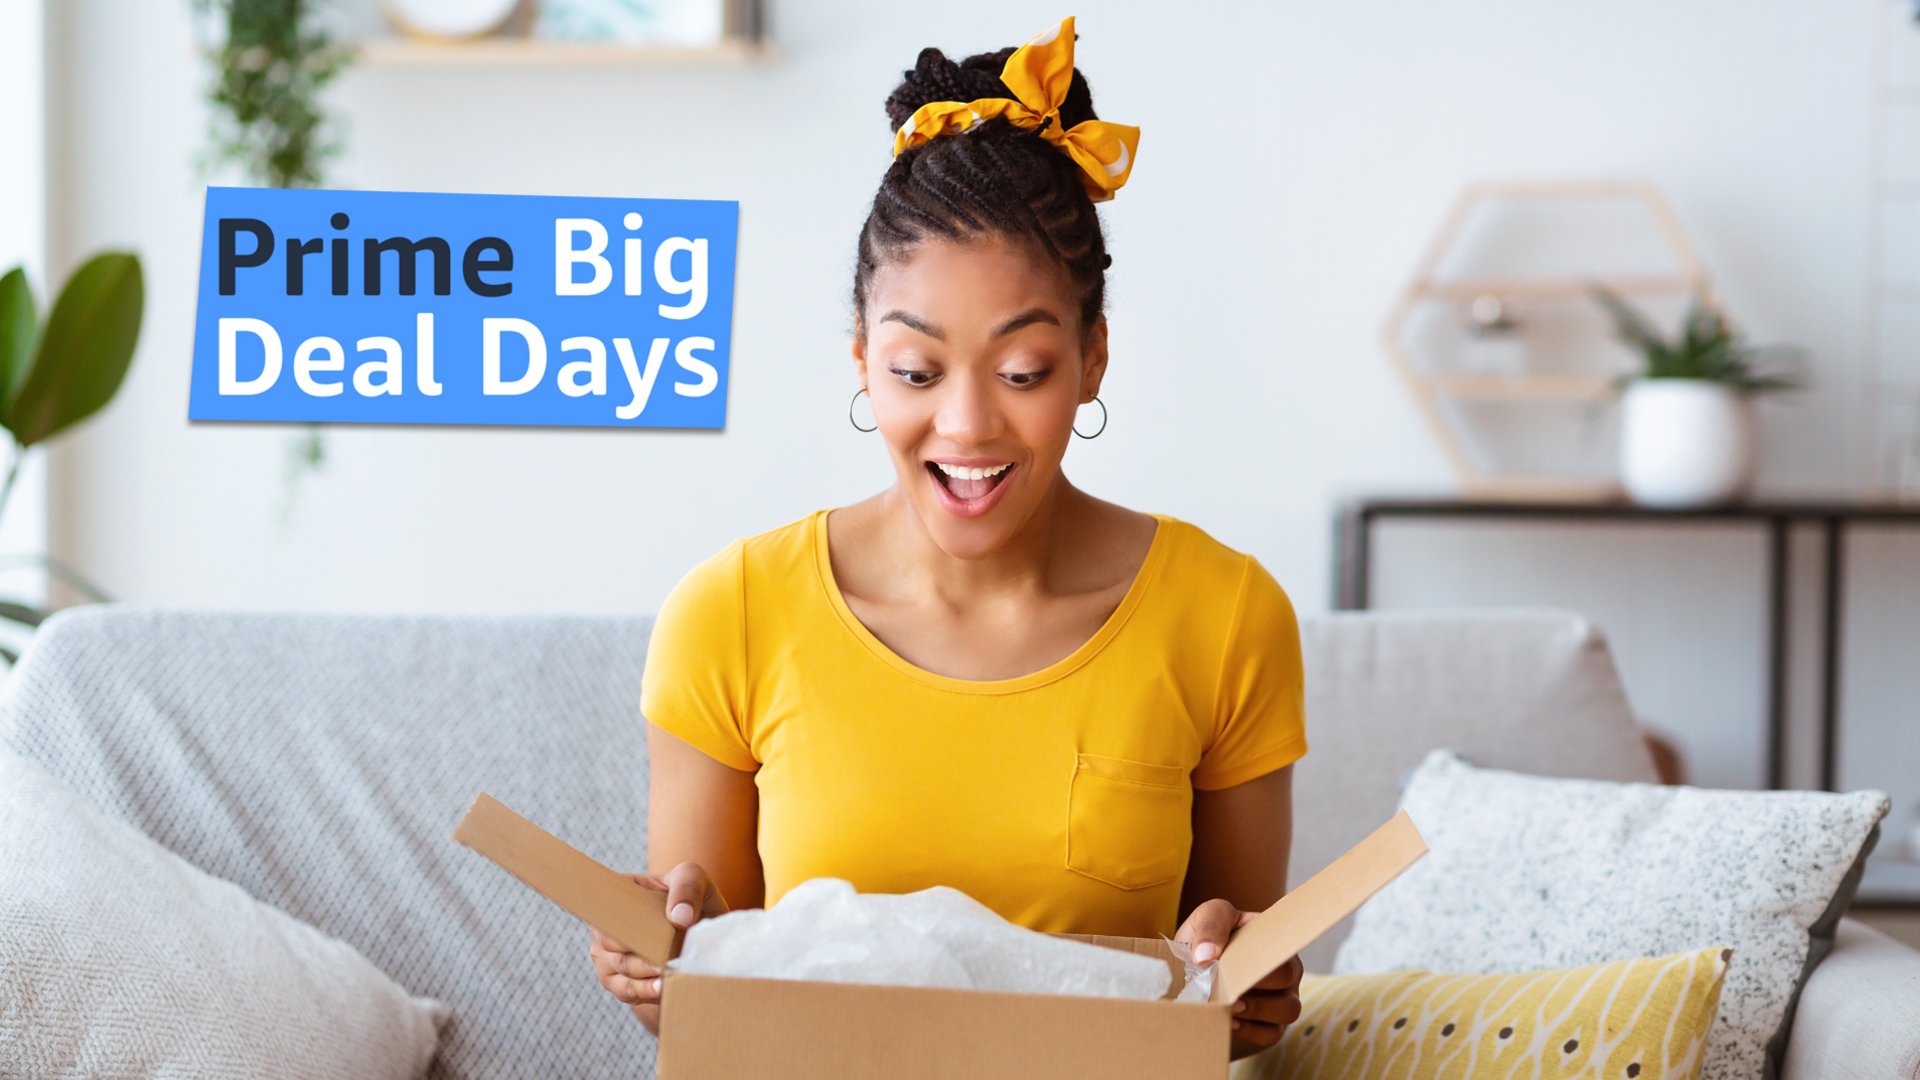 #„Prime Big Deal Days“: Amazon startet nach dem Prime Day zweite Schnäppchenaktion im Oktober